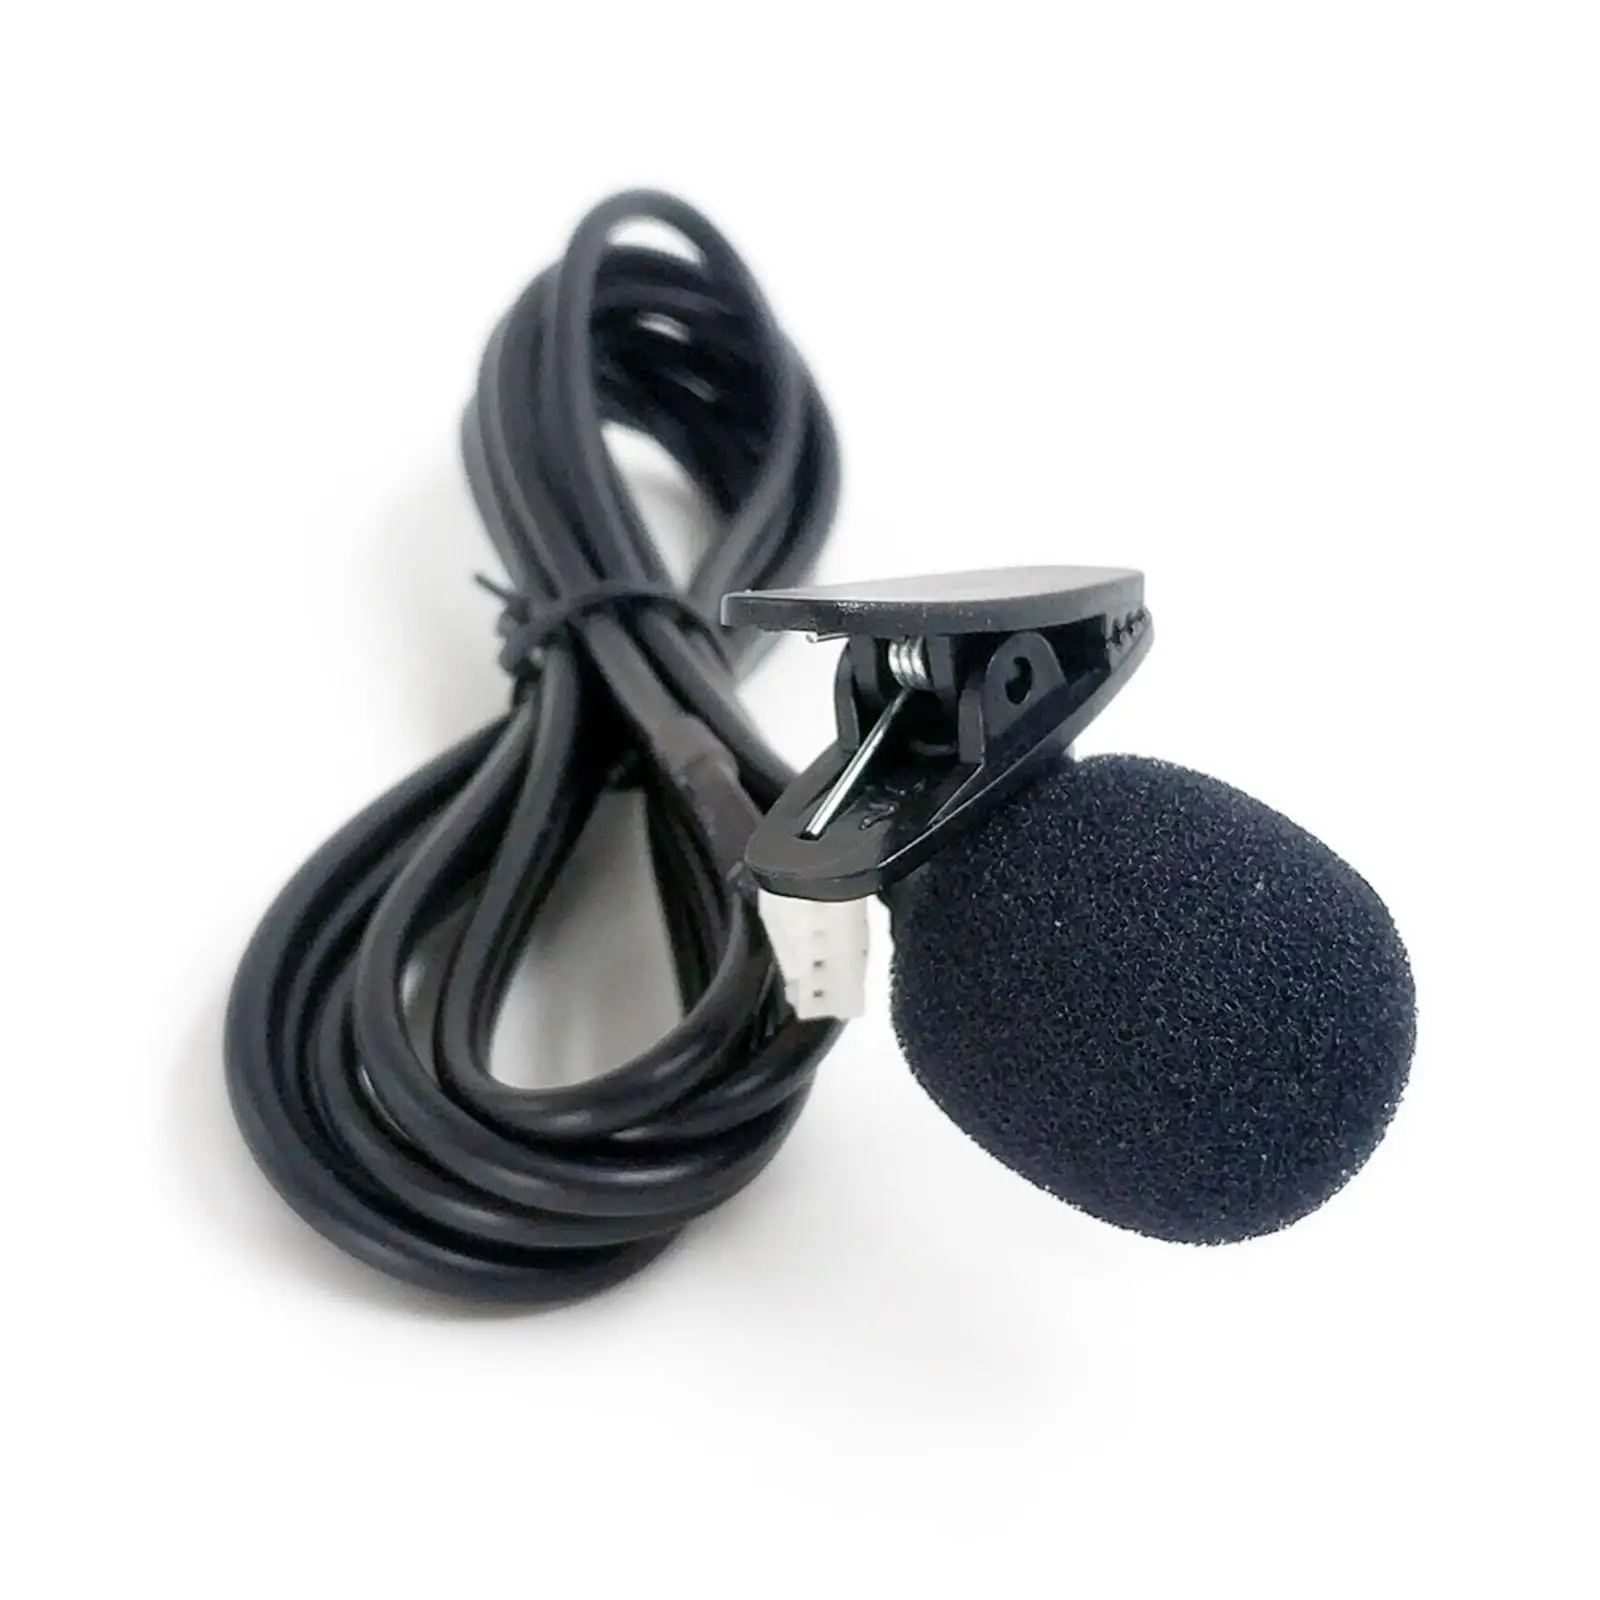 Car Audio Cable Adapter with Mic Support TF Card Handsfree Call Auxiliary Input Adapters for E90 E91 E92 E65 E82 E92 E81